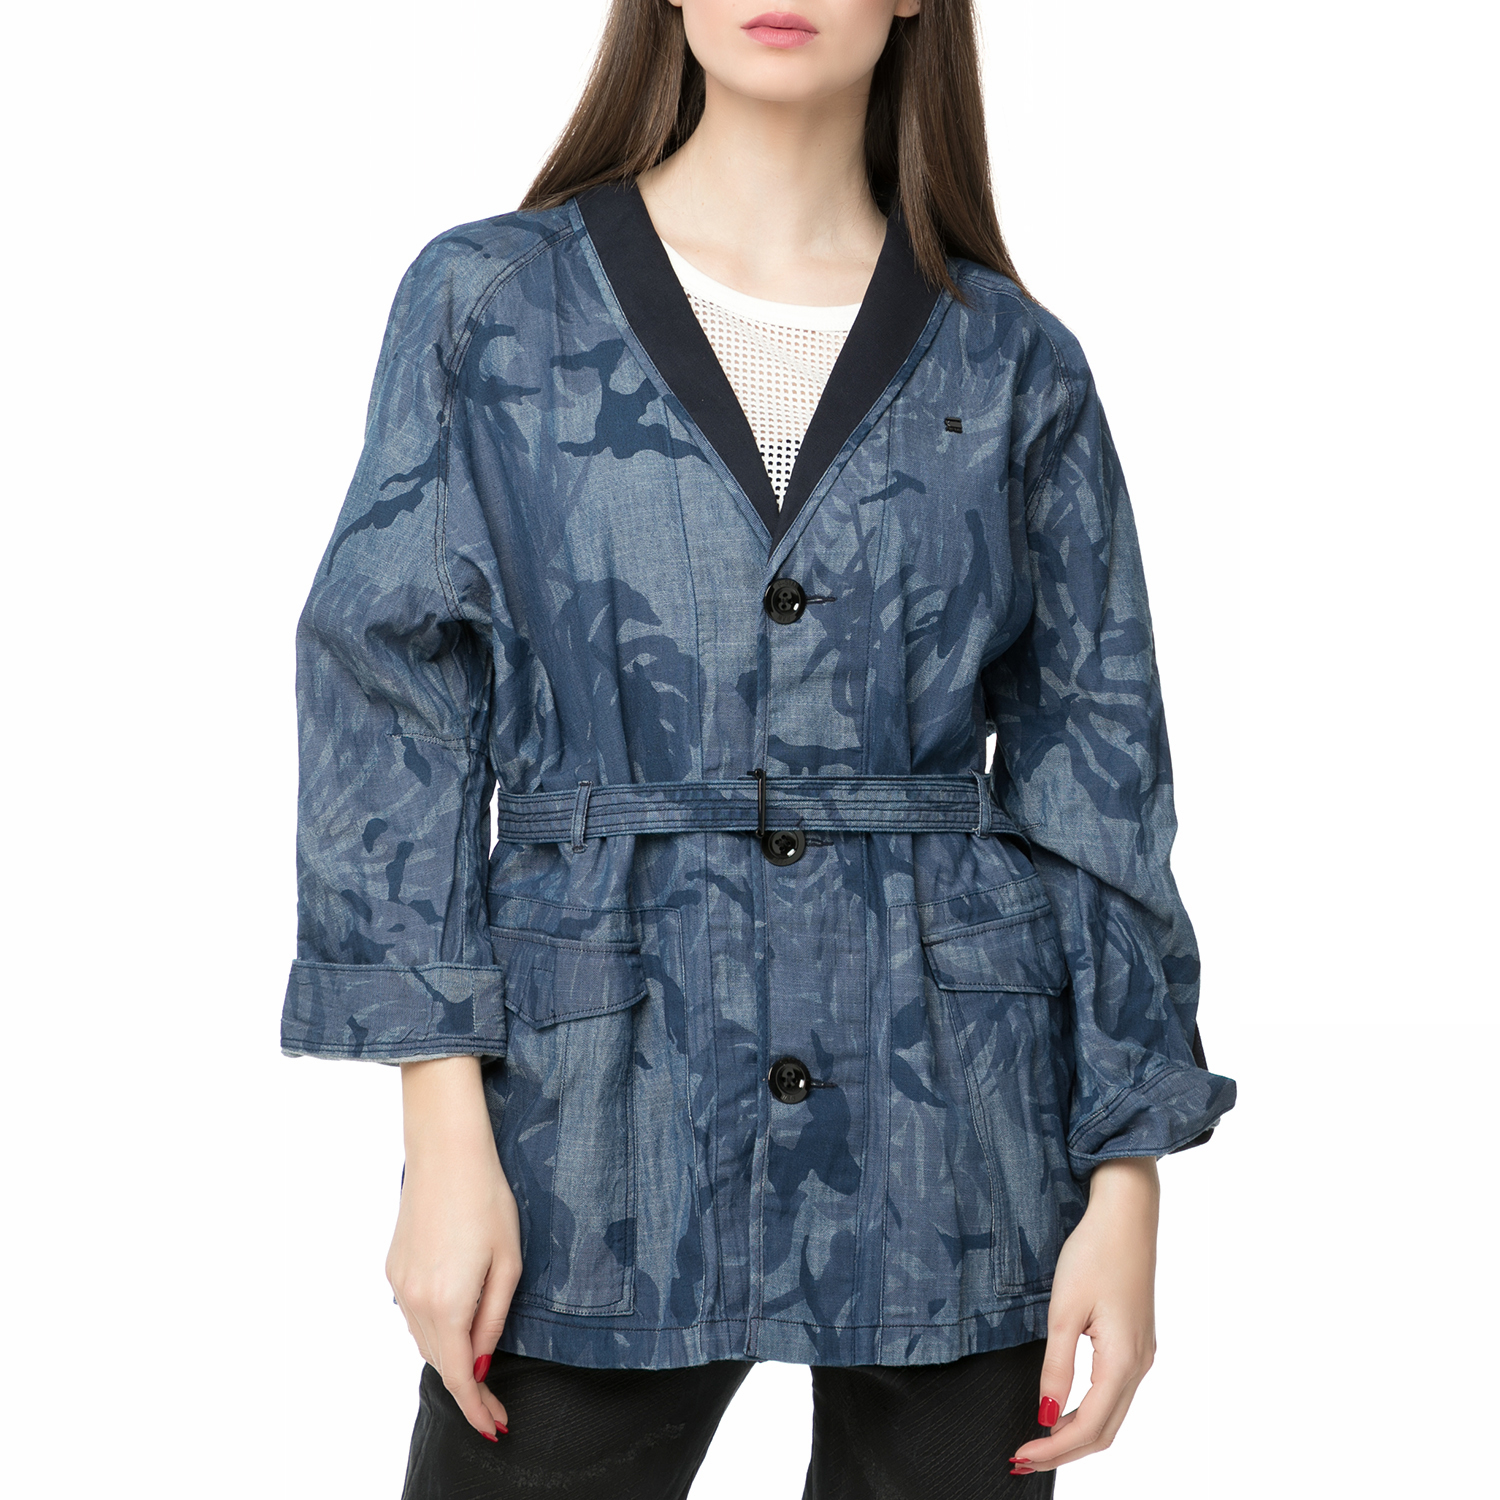 Γυναικεία/Ρούχα/Πανωφόρια/Καπαρτίνες G-STAR RAW - Γυναικεία κοντή καπαρτίνα Rovic XL overcoat μπλε παραλλαγής